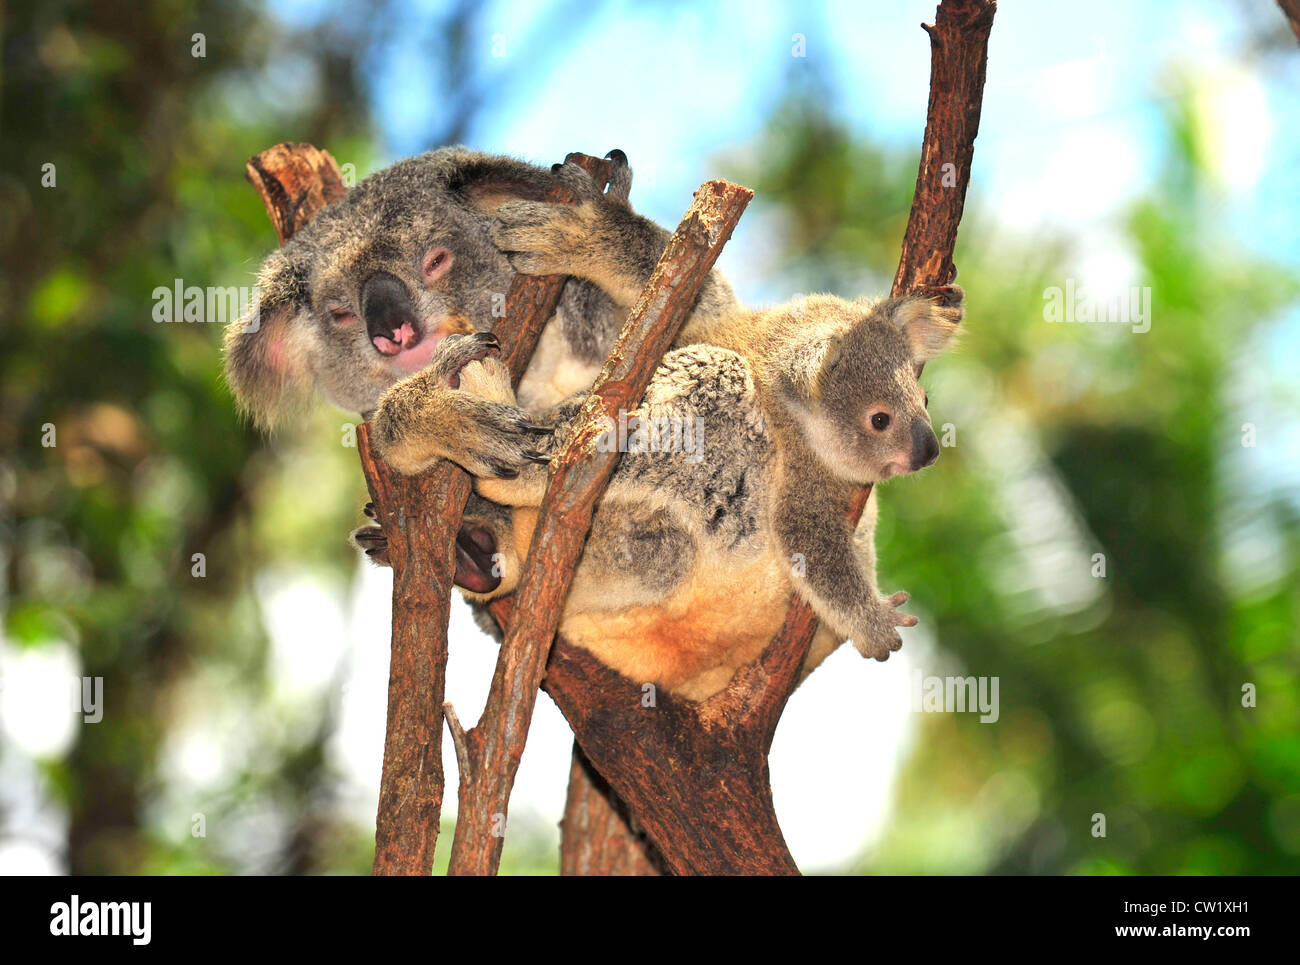 Il koala bear madre con bambino carino joey in eucalipto,Port Macquarie, Nuovo Galles del Sud, Australia.mammifero esotici con struttura ad albero per neonati Foto Stock